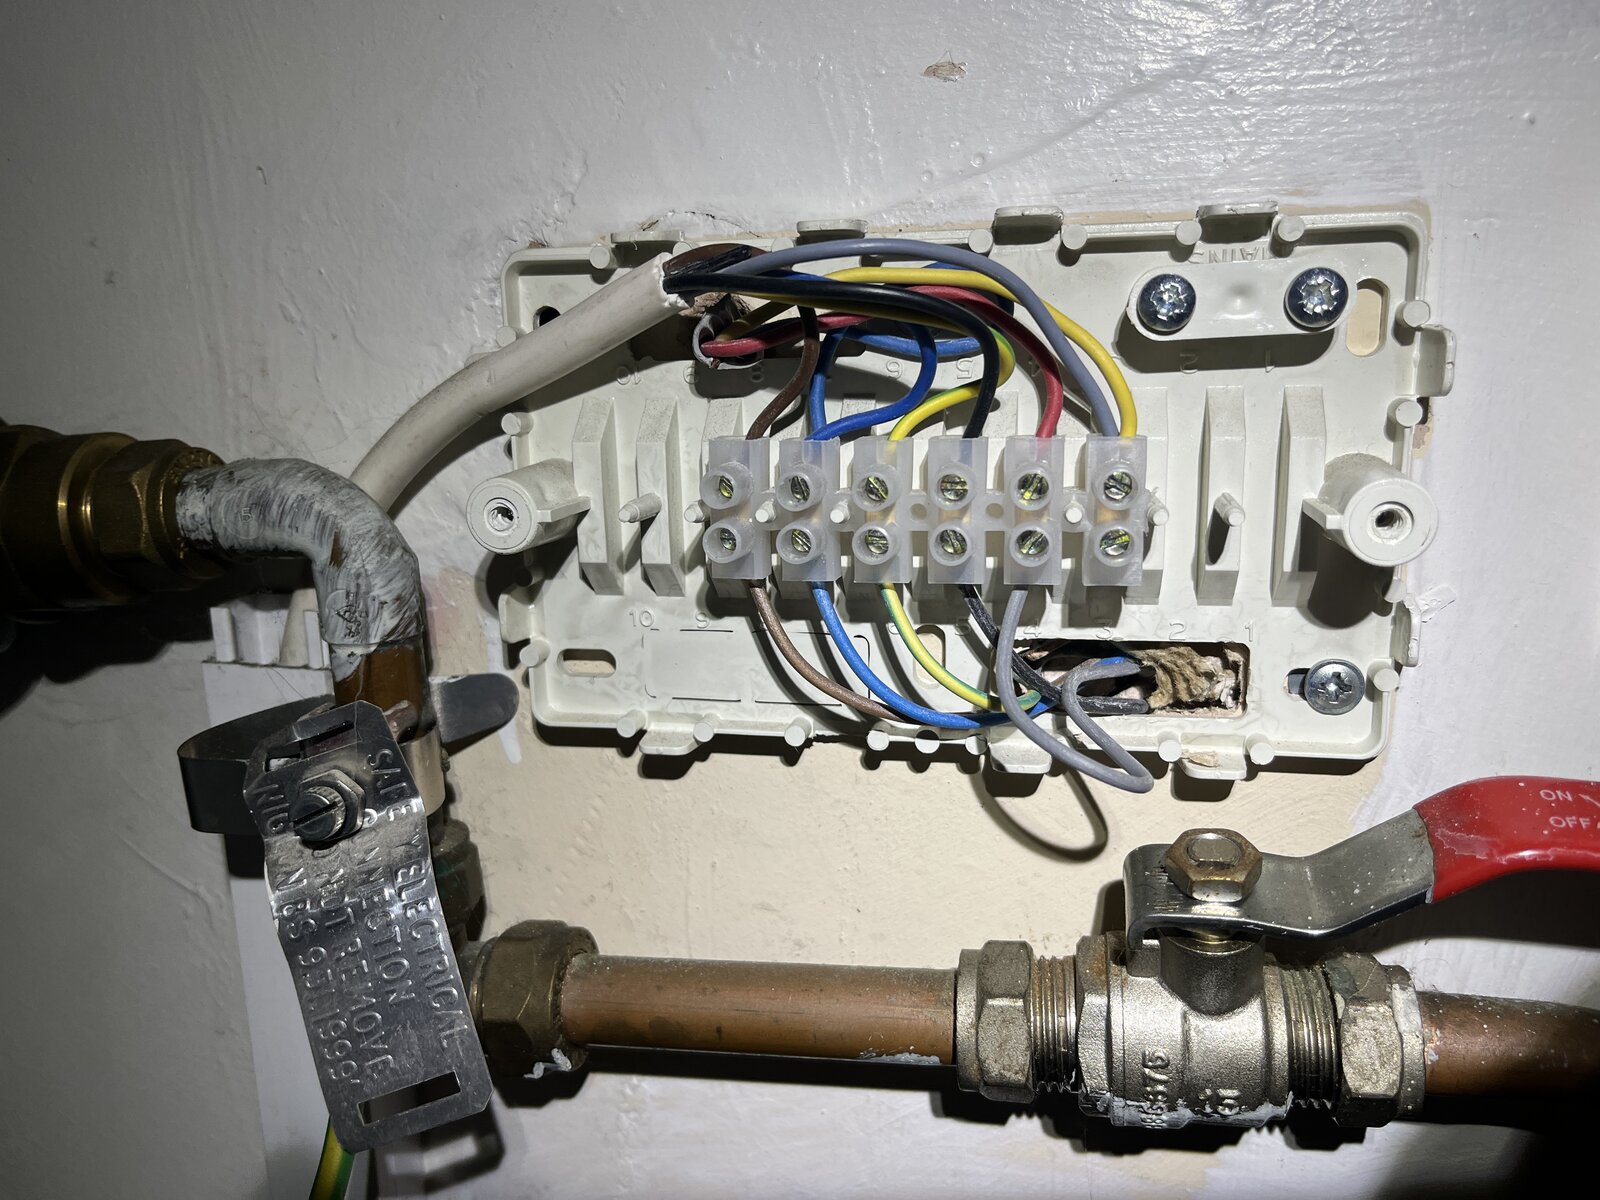 Honeywell 42002116-001 wiring.JPG